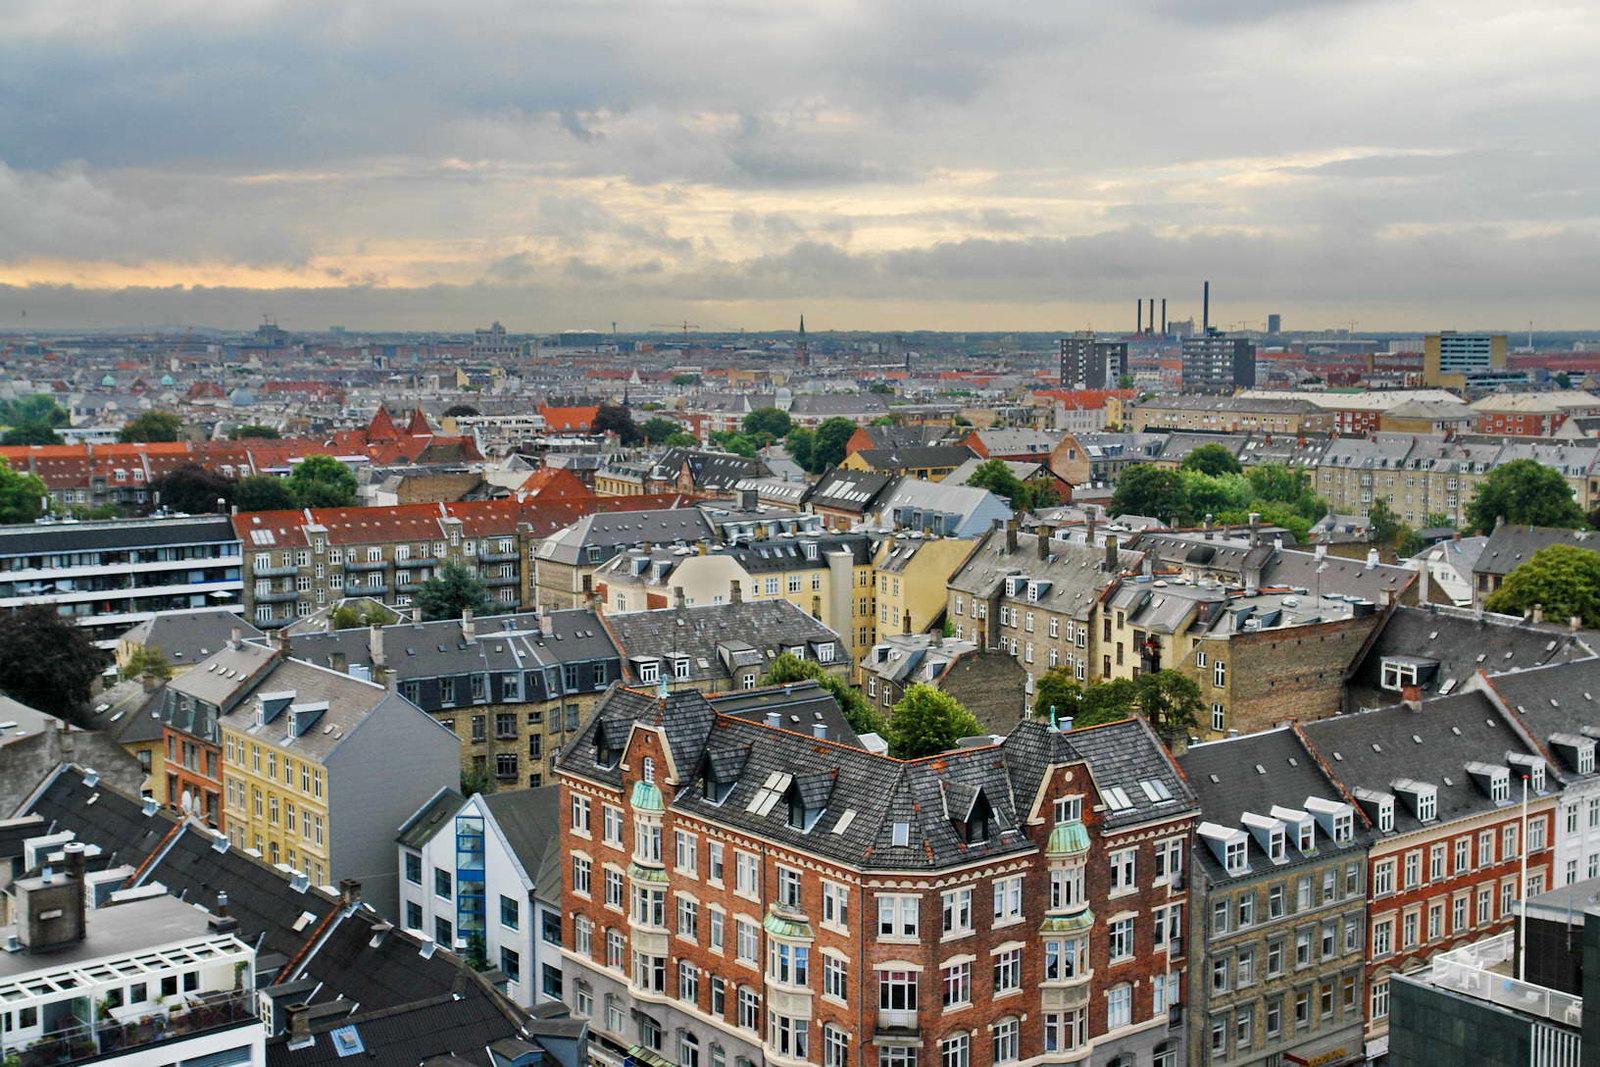 κοπεγχαγη αξιοθέατα το Νέο Λιμάνι (Nyhavn) ίσως το πιο διάσημο μέρος της πόλης